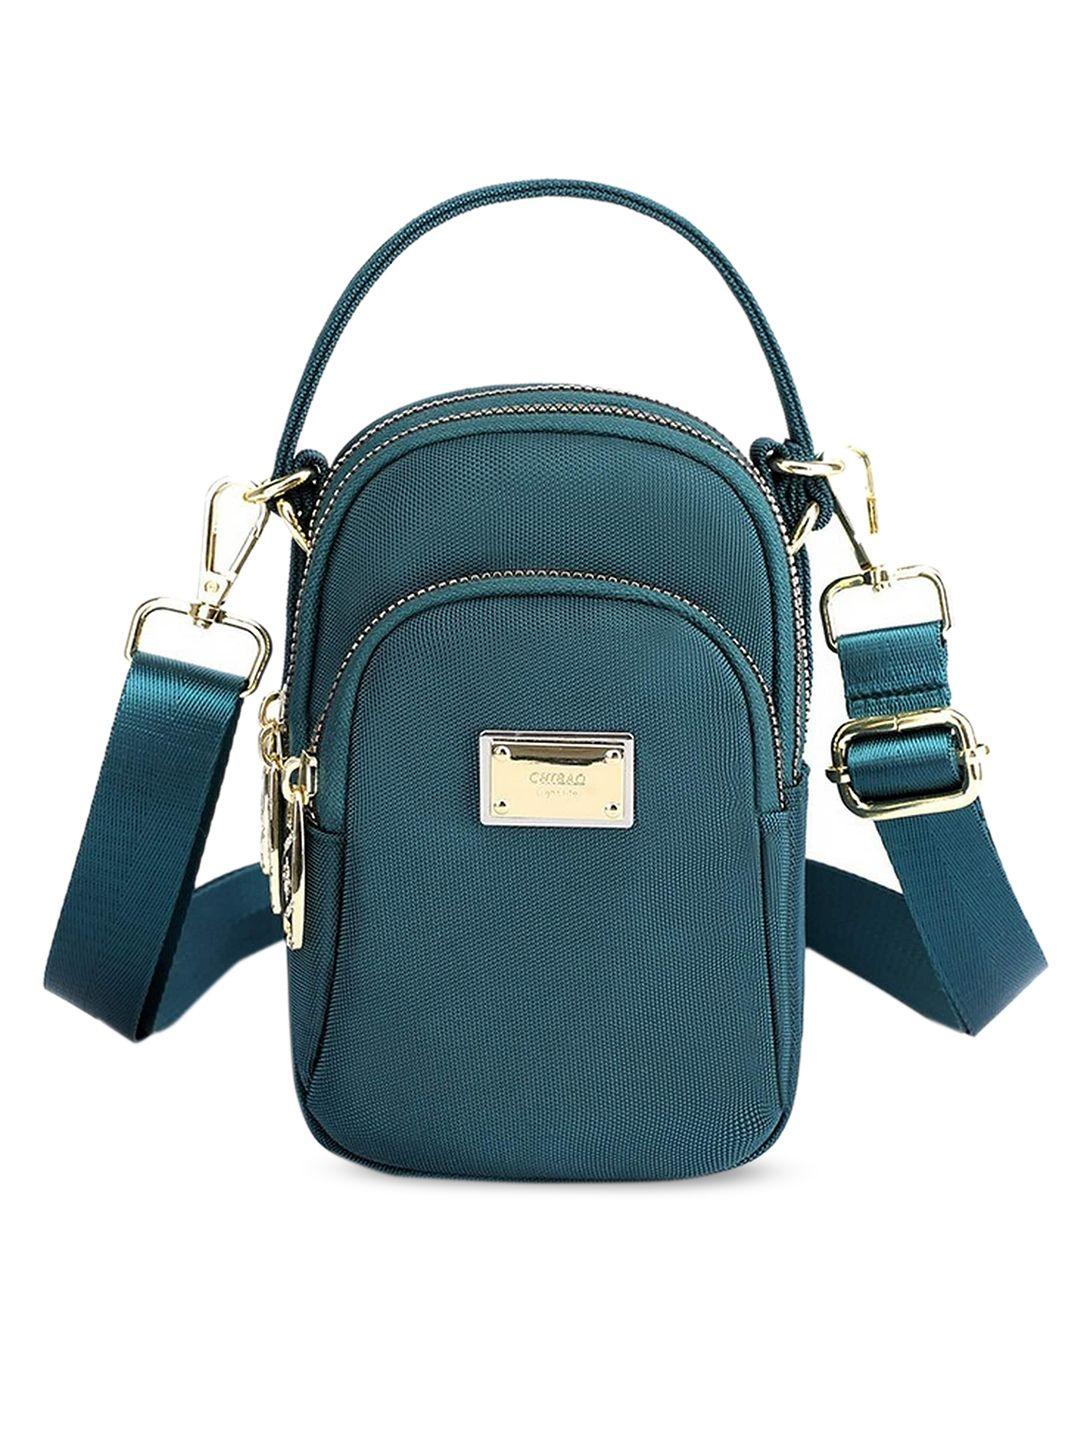 diva dale women green structured multi-pockets sling bag